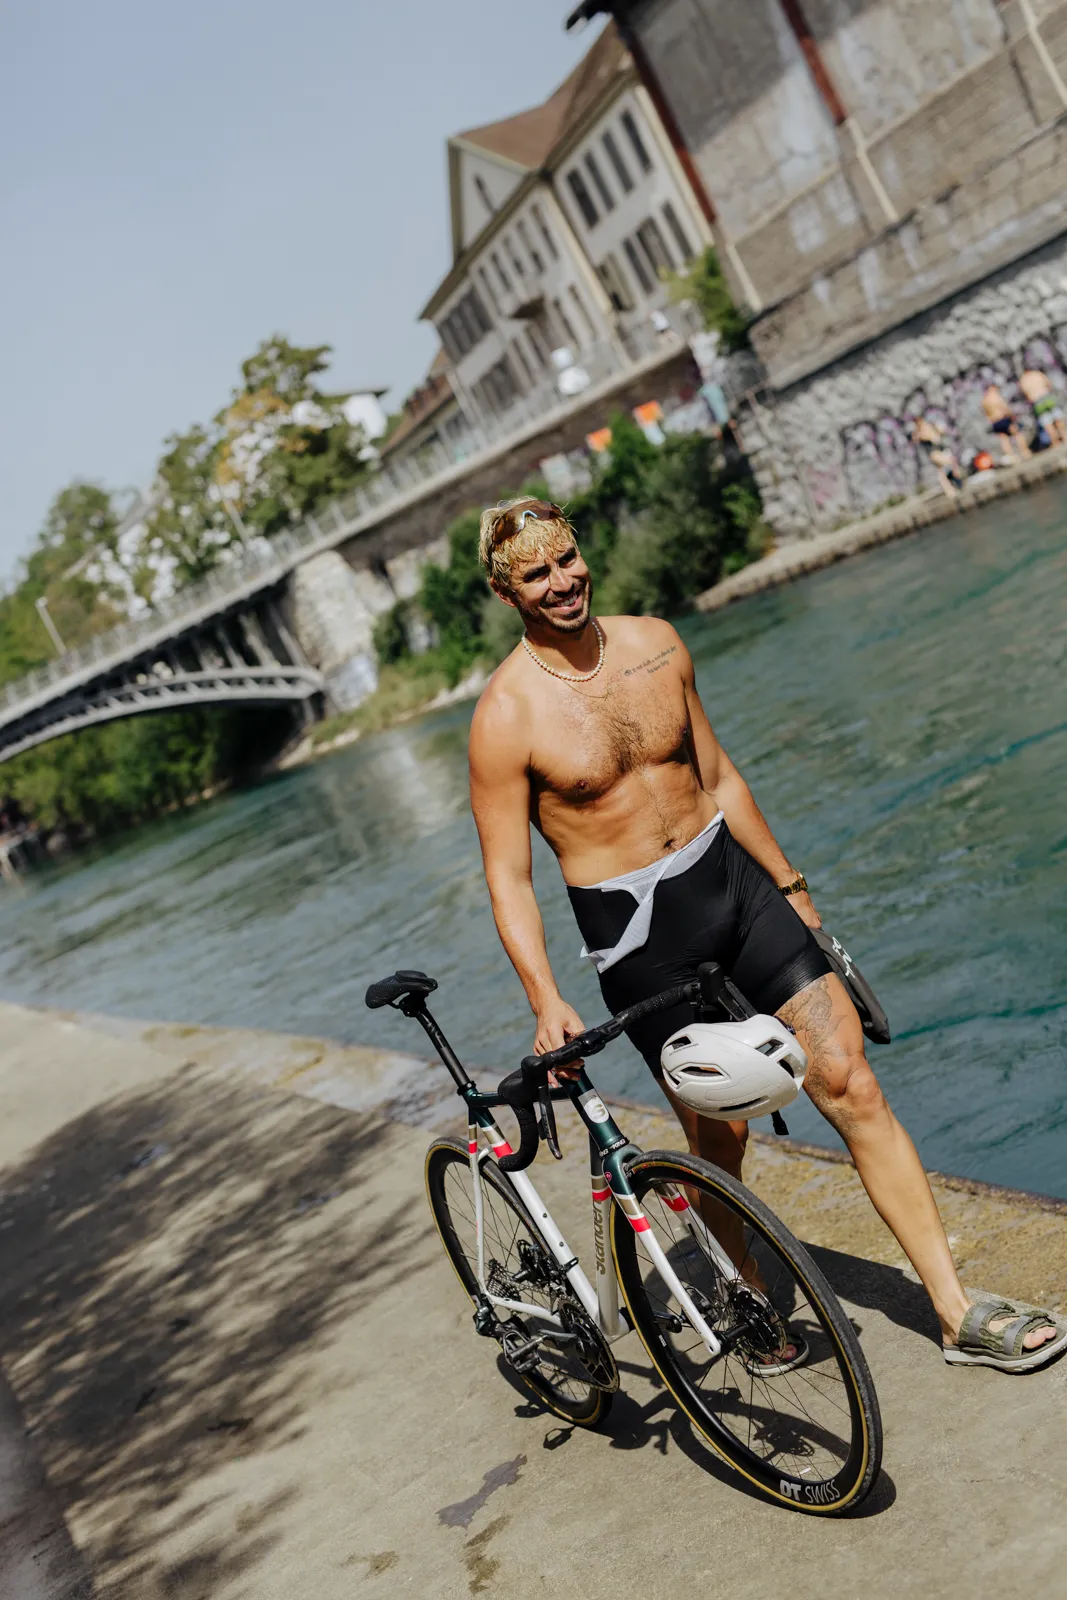 Cycling in Zurich with Triebwerk LTD - The Prince of Zurich